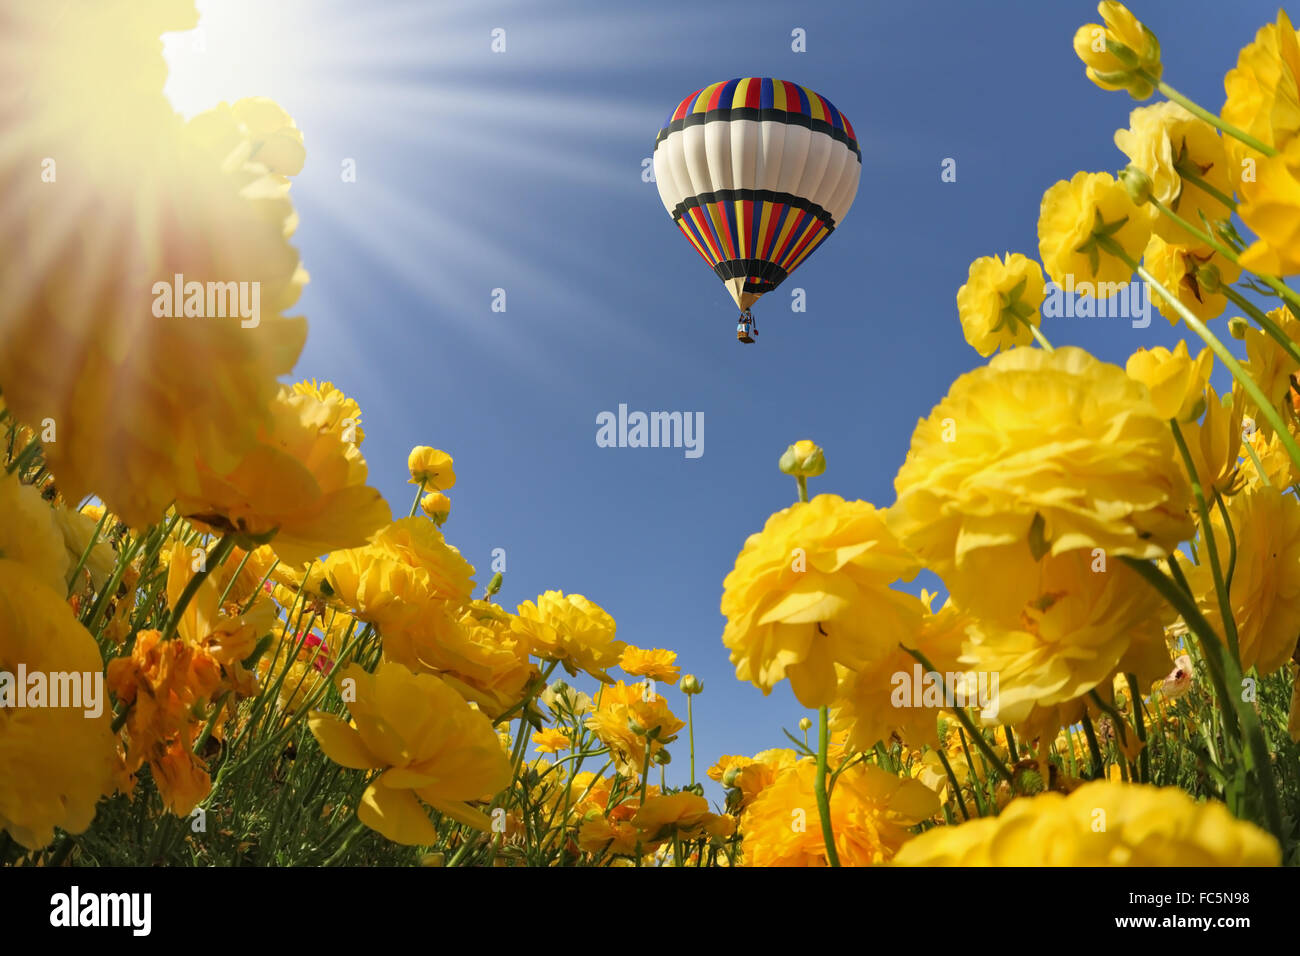 Le soleil de printemps brille ballon volant Banque D'Images